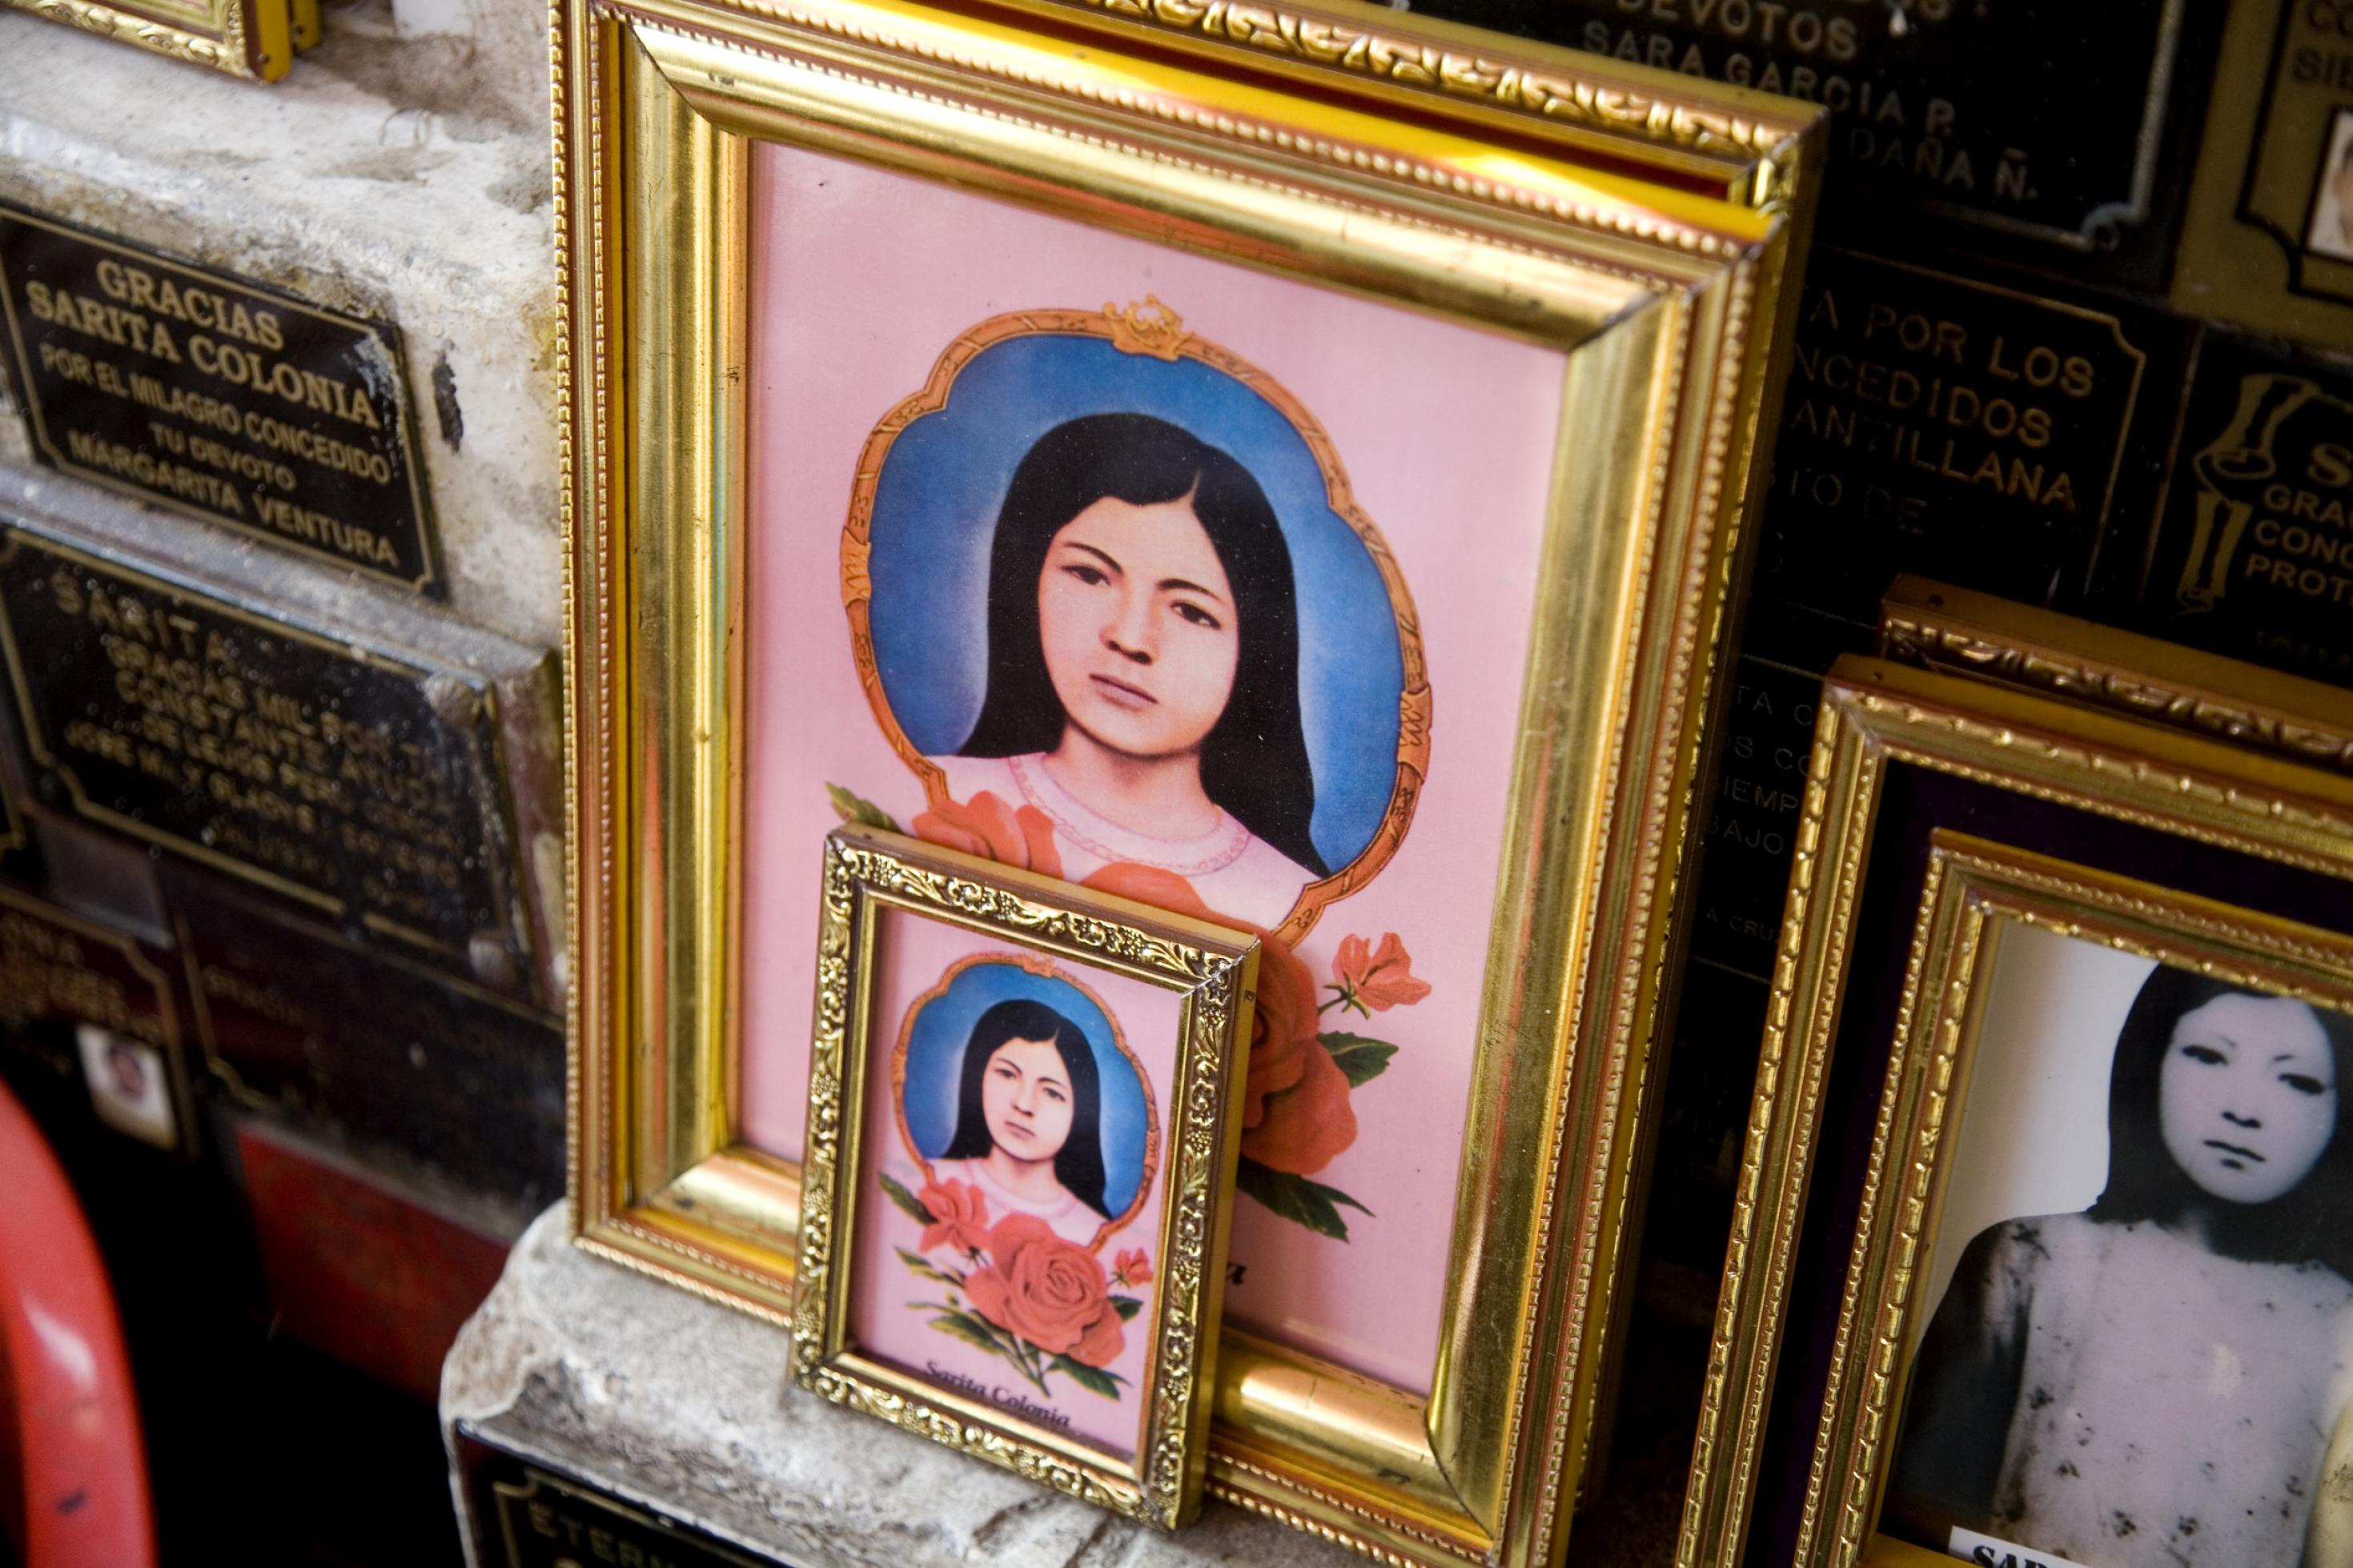 Bilder der Sarita Colonia, einer vom Vatikan nicht anerkannten aber in Lima sehr beliebten „Heiligen“.  Santa Colonia ist die Schutzpatronin der Taxifahrer und Kriminellen.